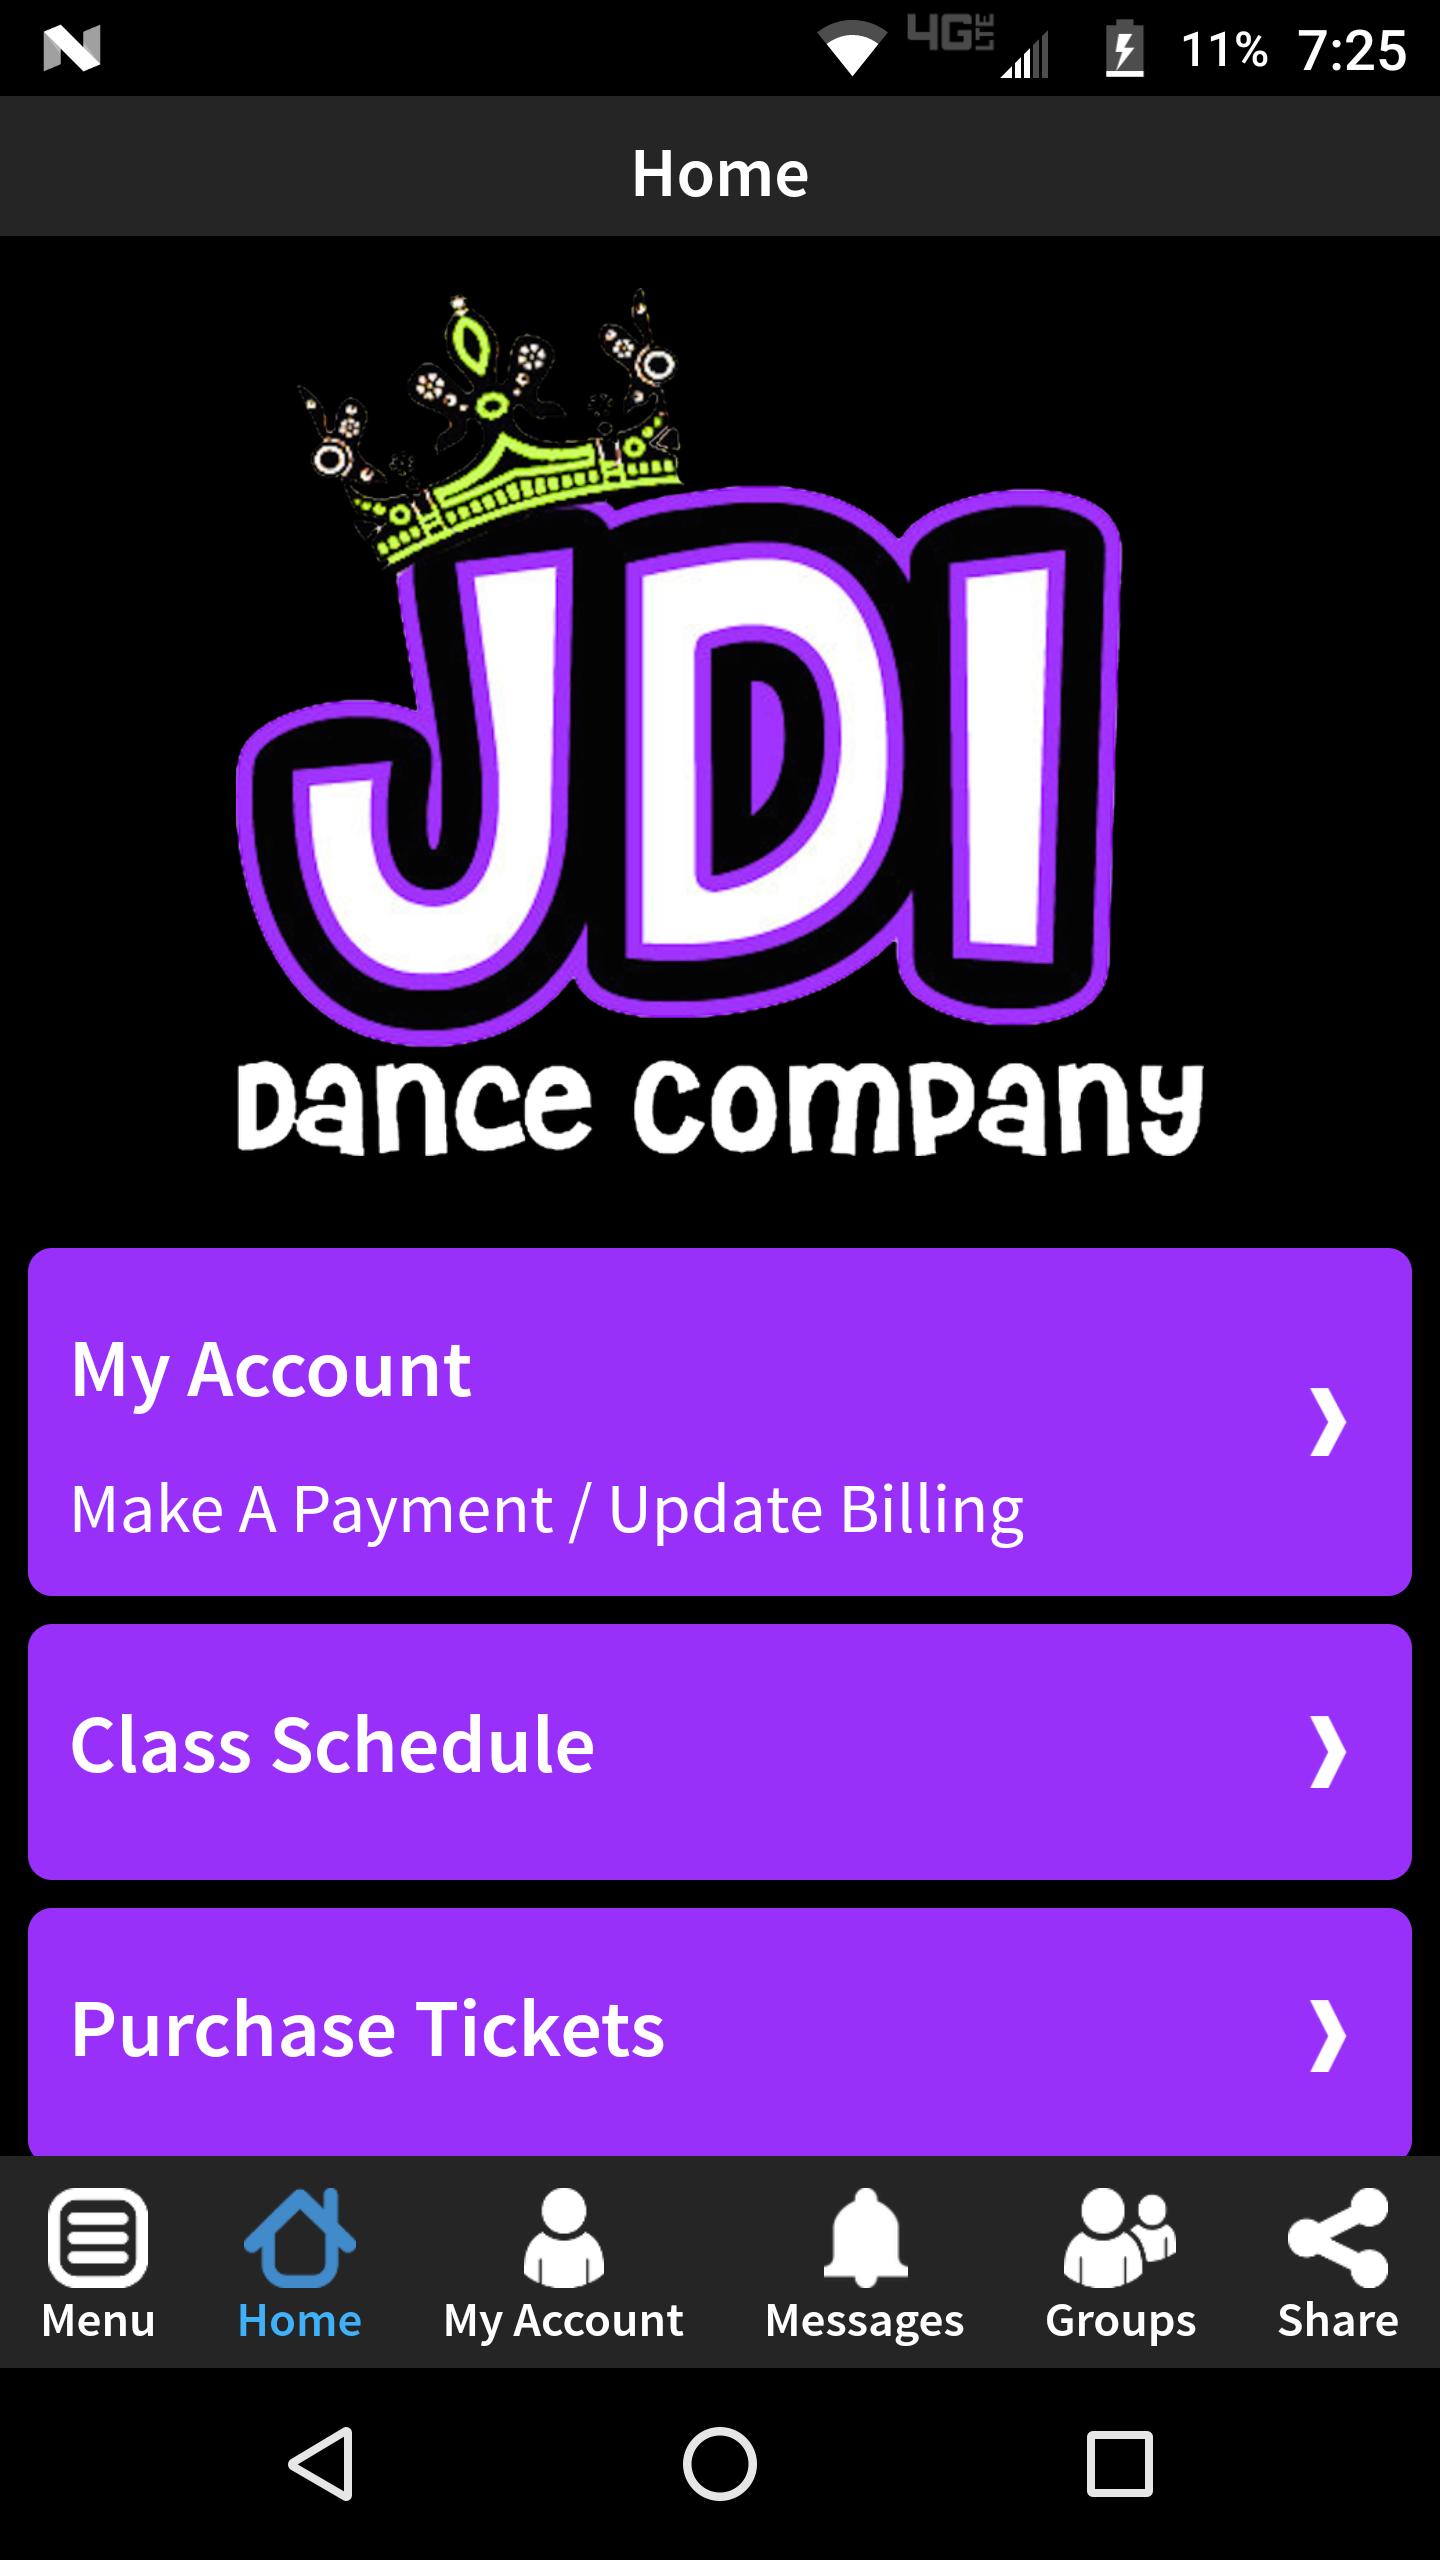 JDI Dance Company 6.0.6 Screenshot 2